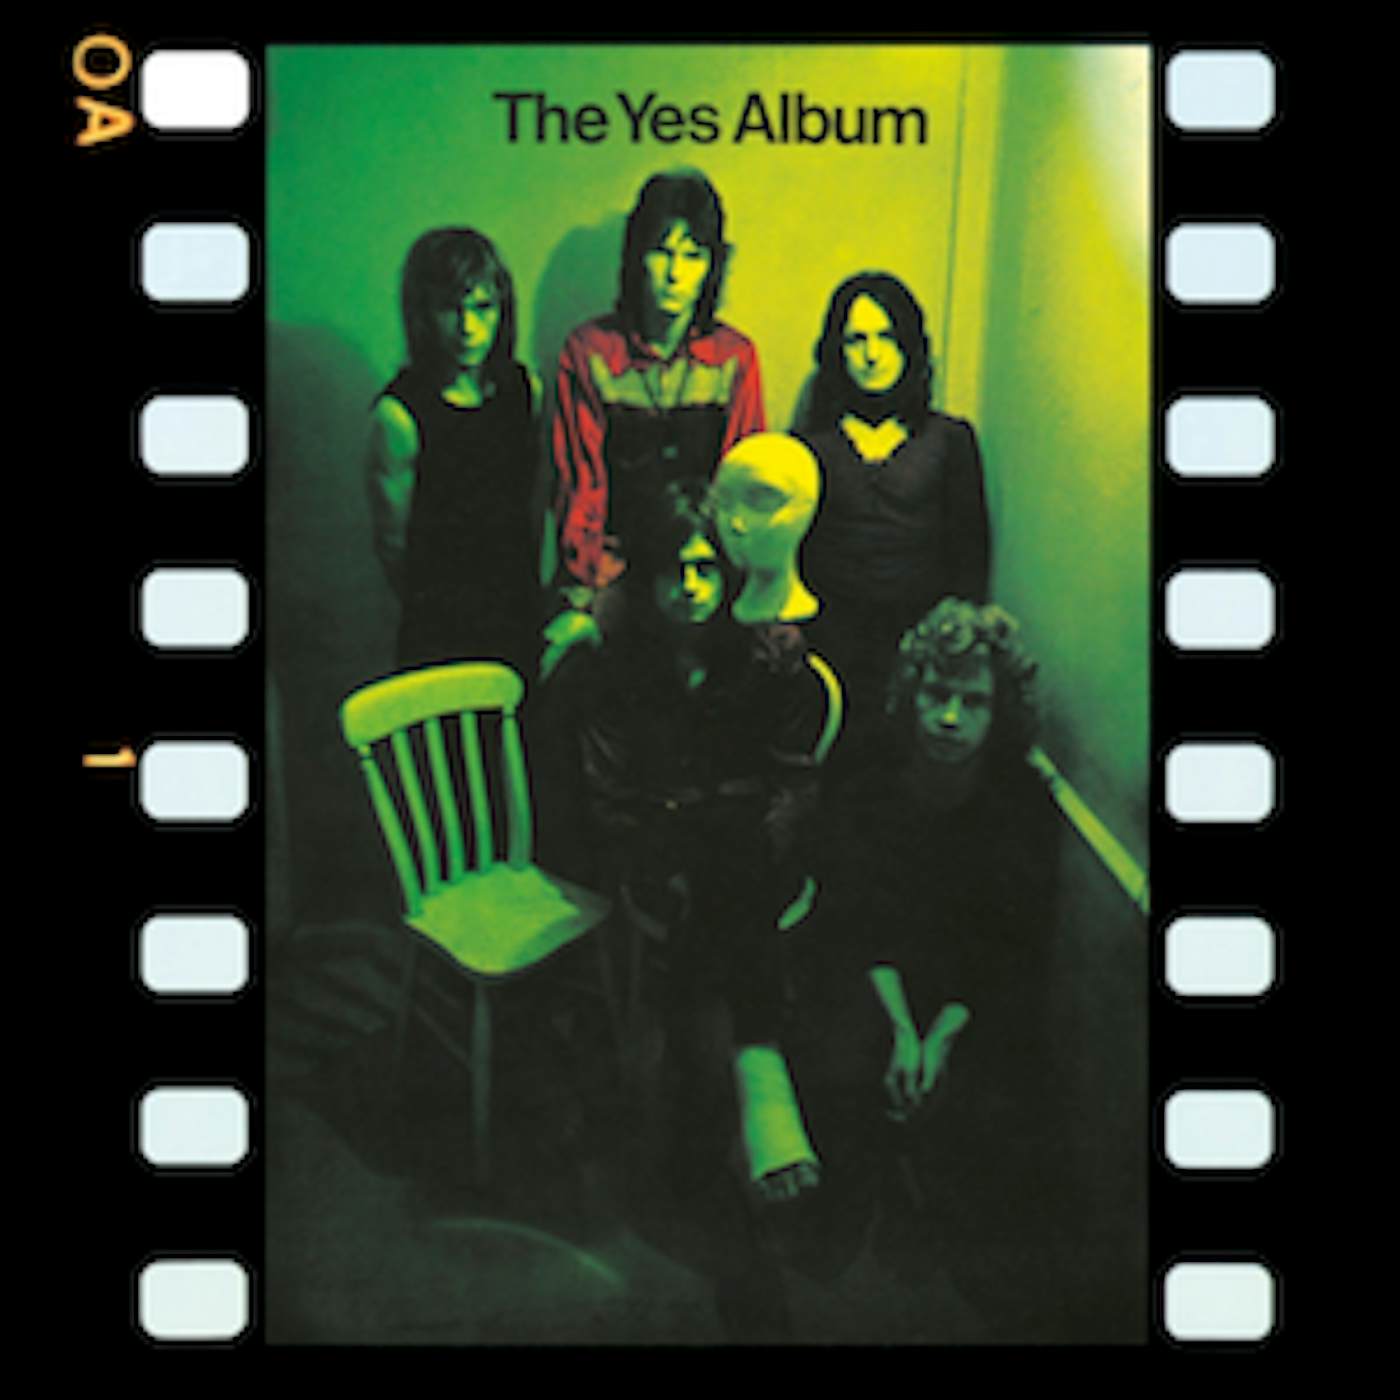 Yes LP Vinyl Record - The Yes Album